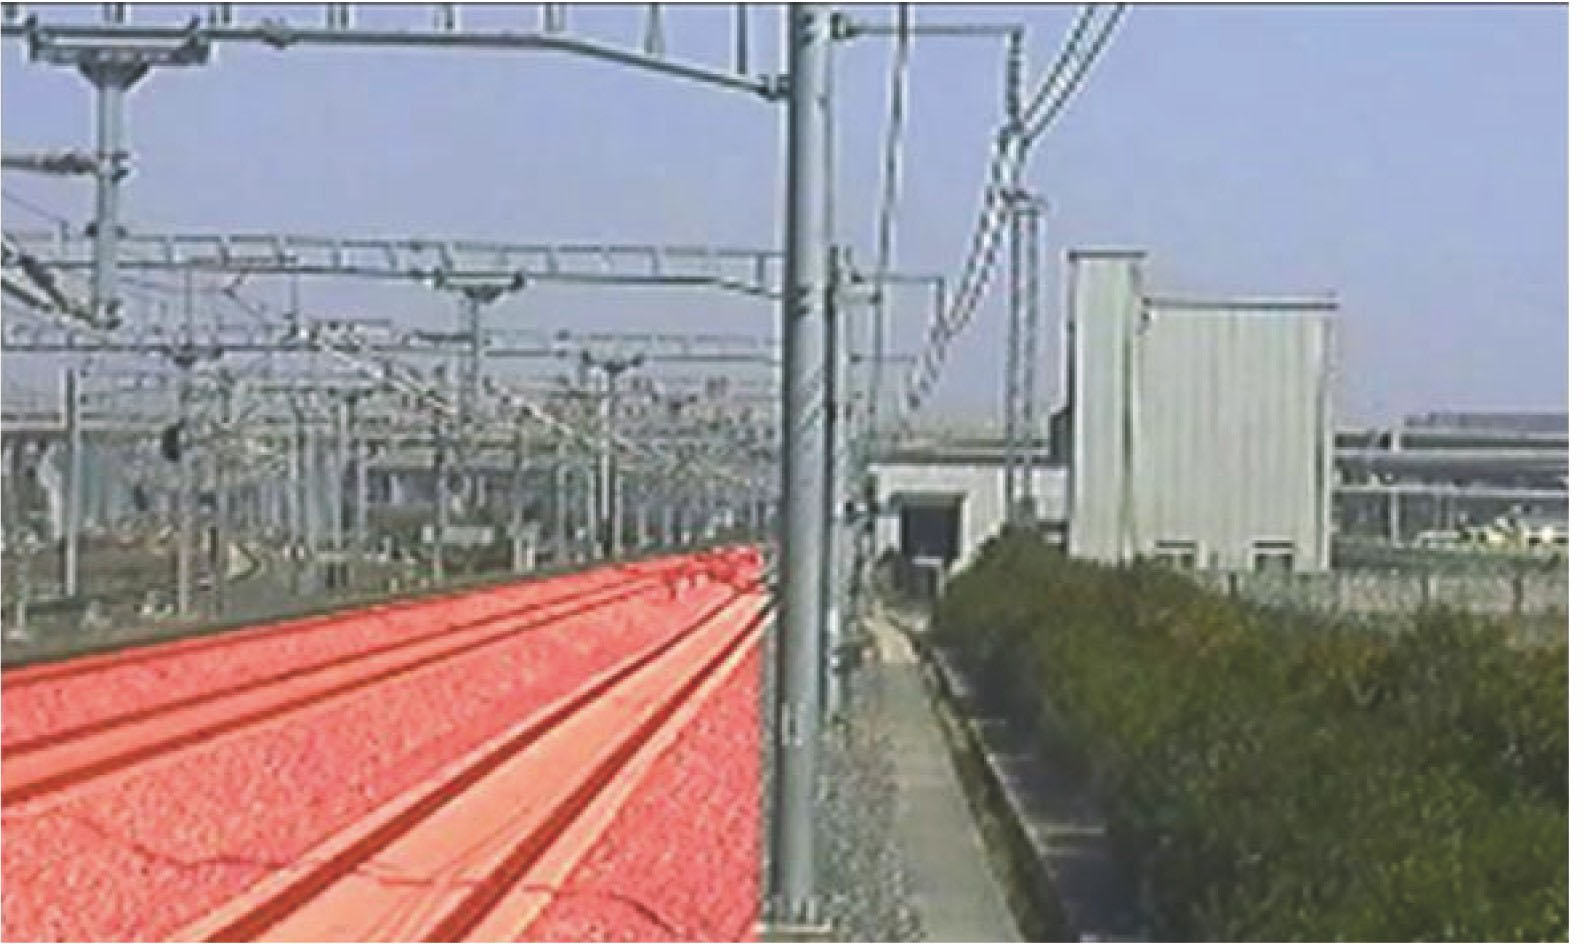 Railway scene and track area